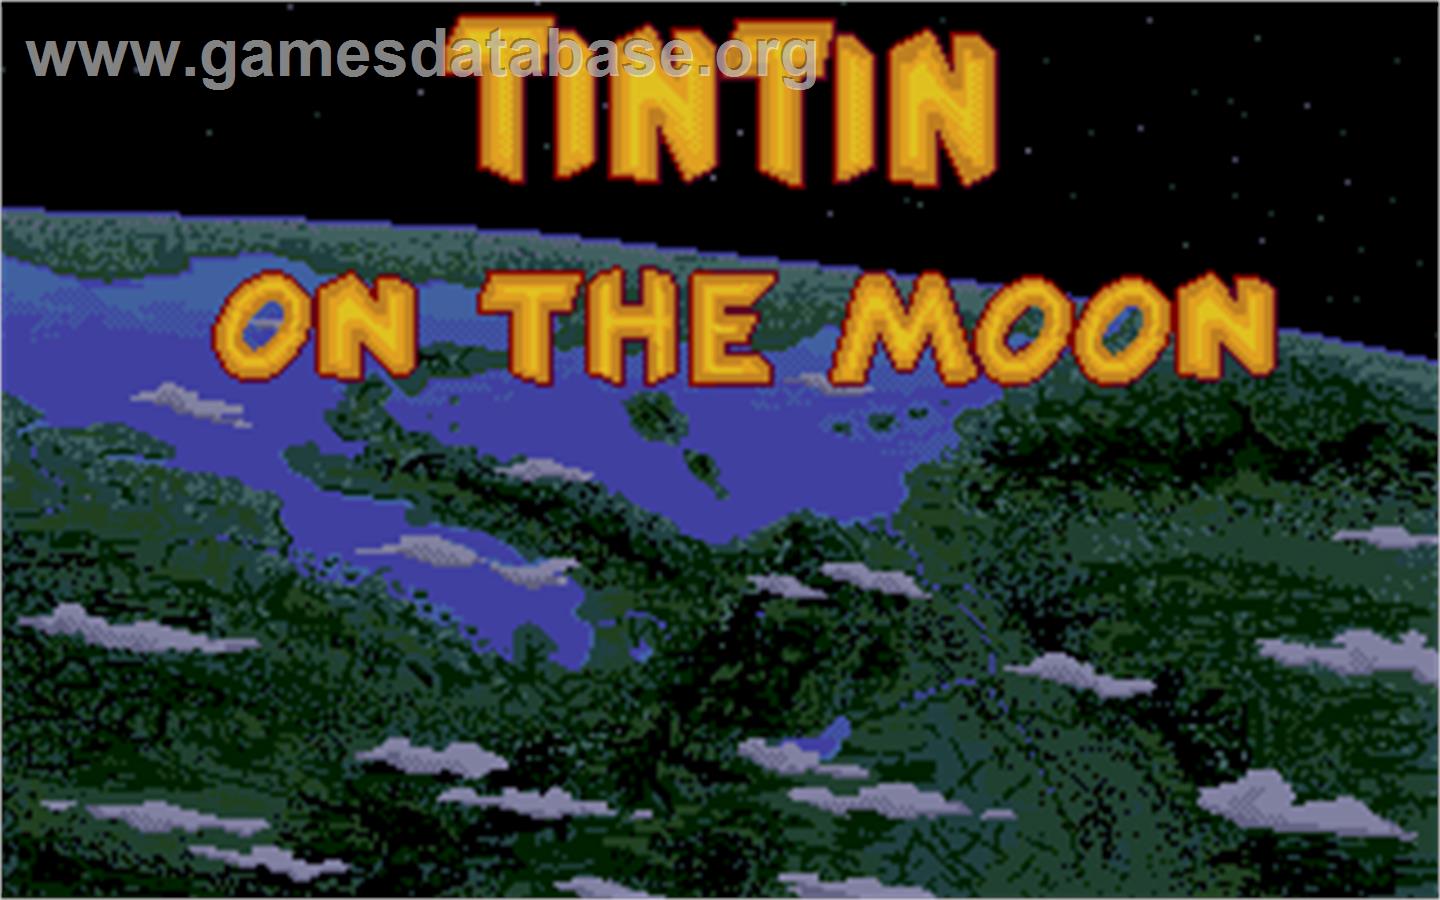 Tintin on the Moon - Atari ST - Artwork - Title Screen